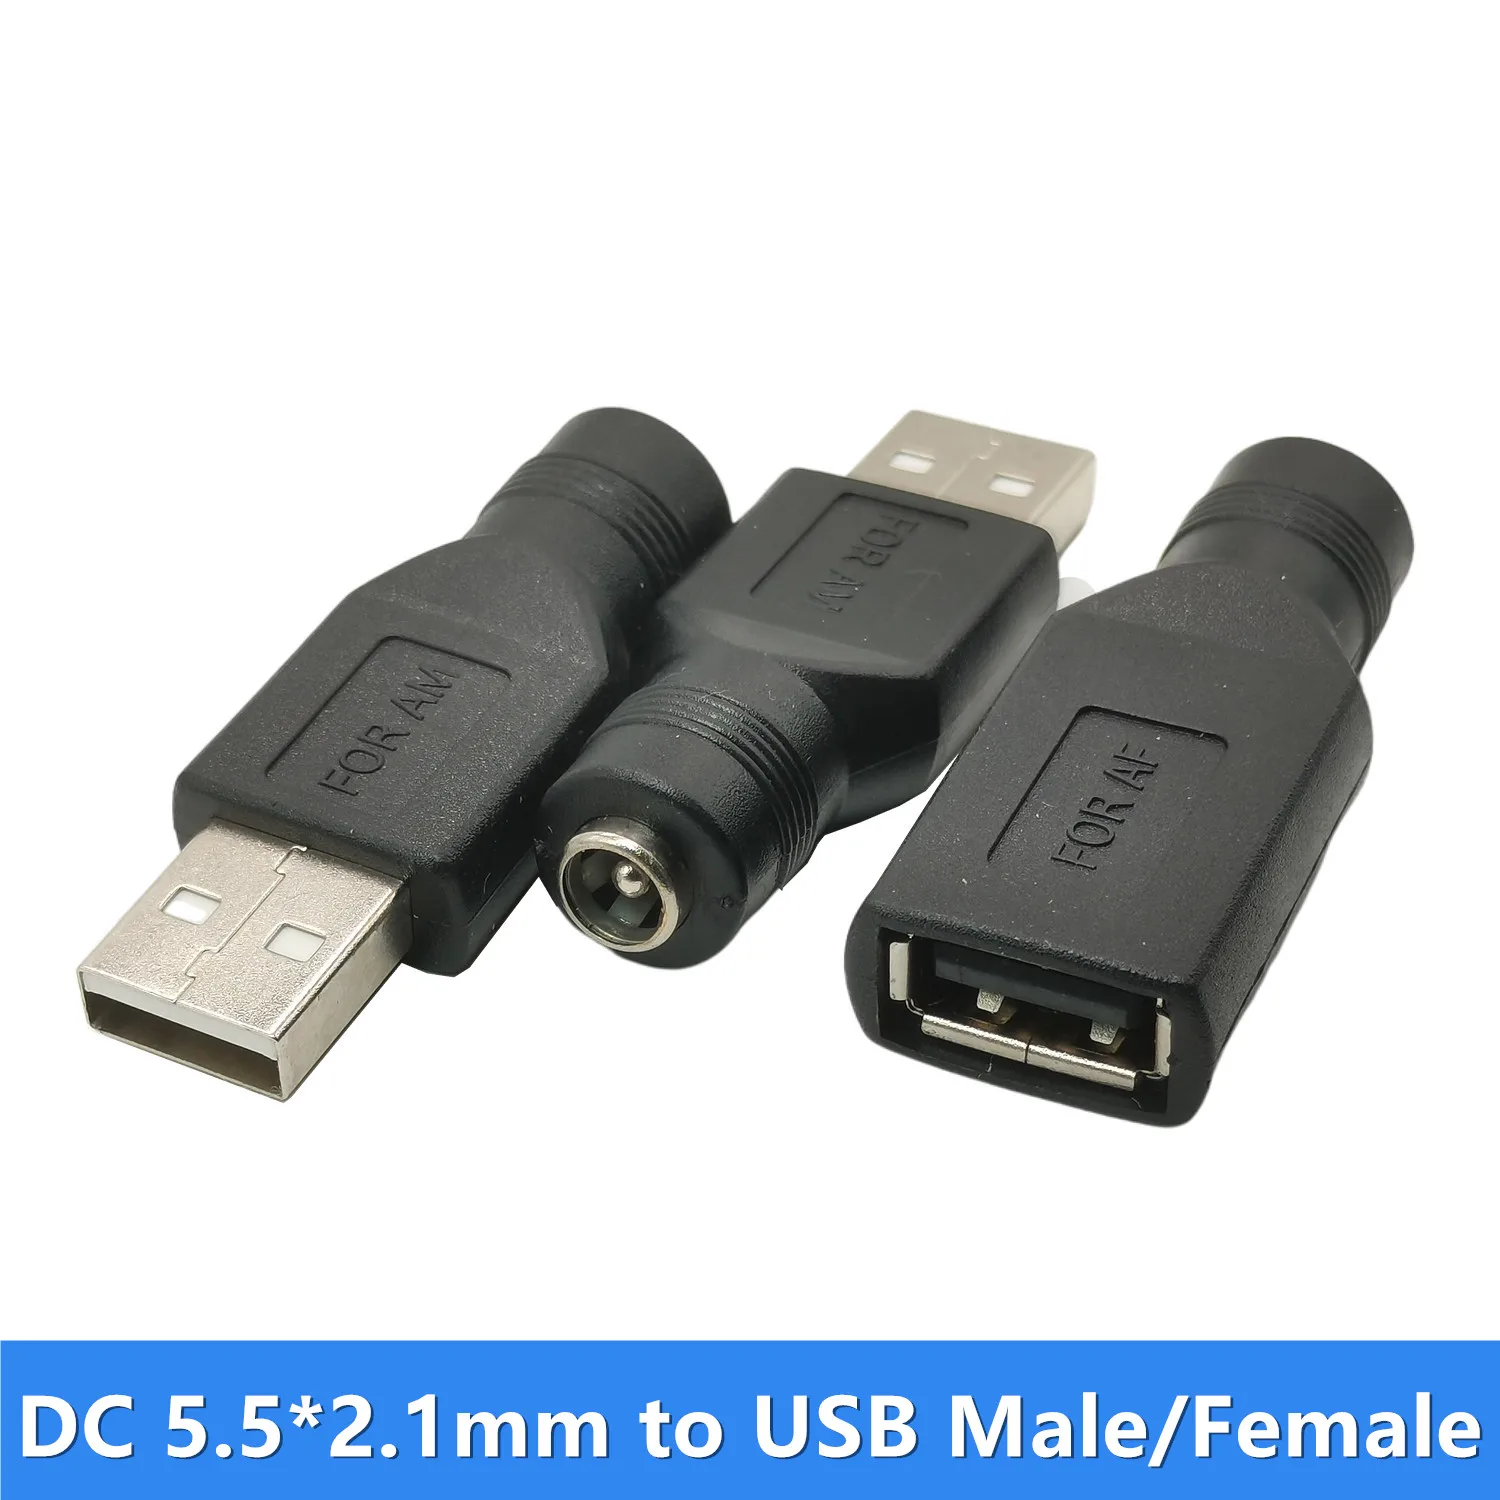 Adattatore USB DC 5.5*2.1mm femmina a USB maschio, connettore da 5.5x2.1mm  a USB femmina 1 pz